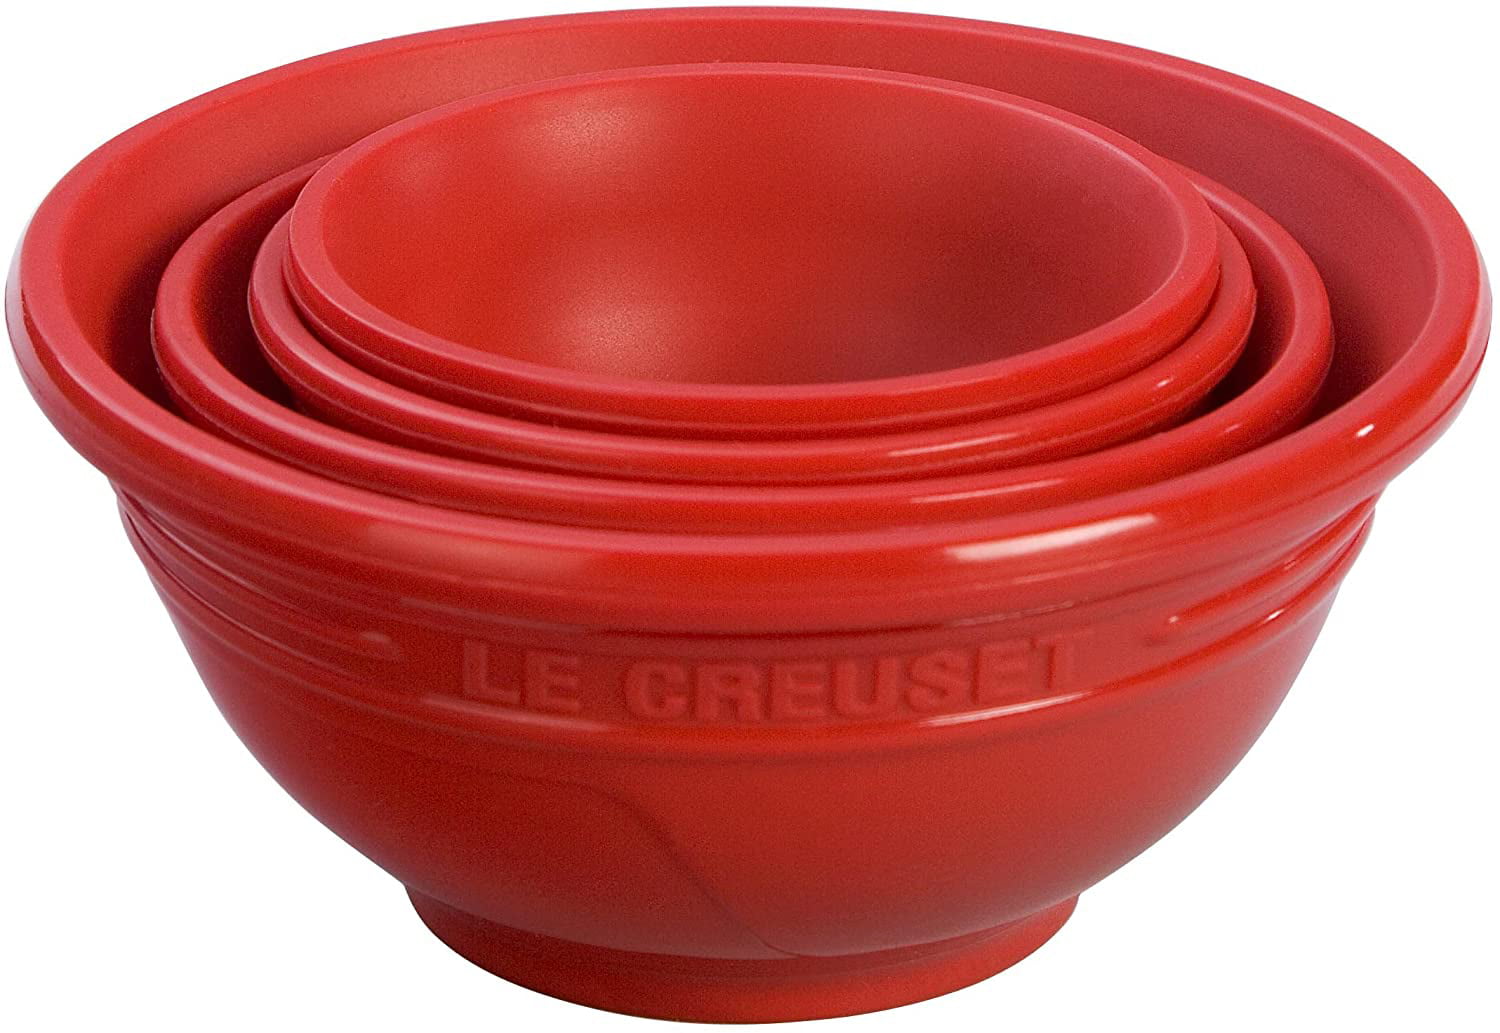 Details about   Le Creuset Mini Bowl Heat-Resistant Ceramic 6 Pieces Rainbow Collection NEW 